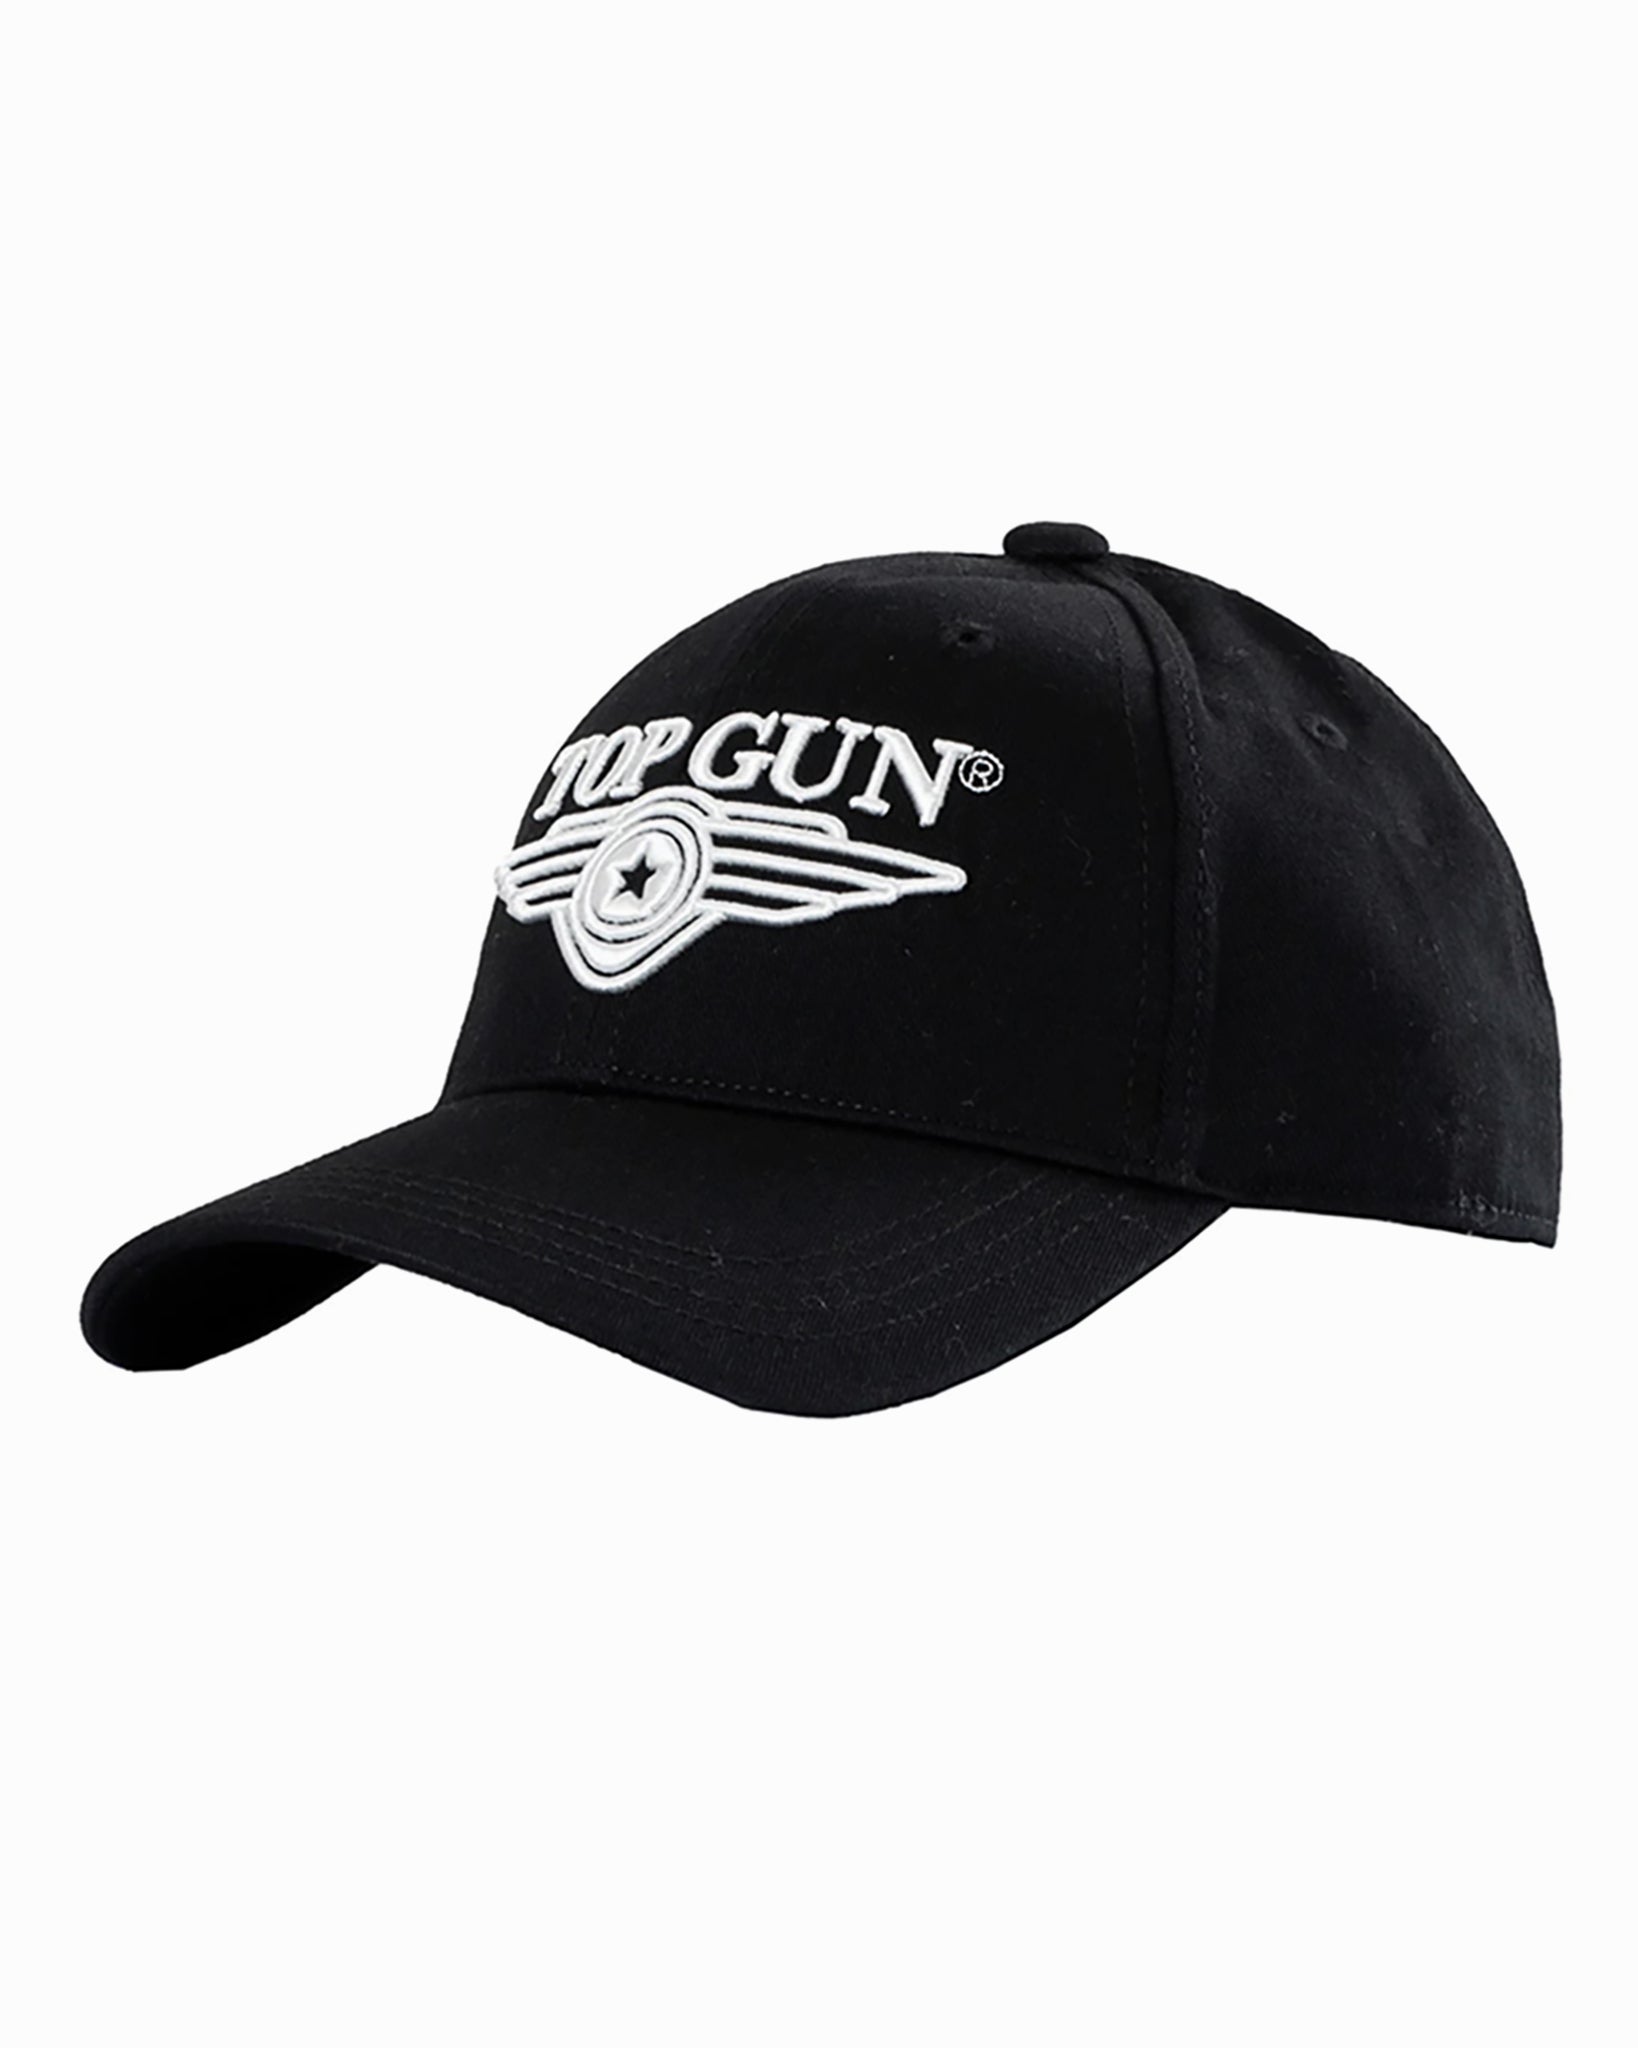 LOGO – GUN® Store Top CAP Gun 3D TOP WINGS